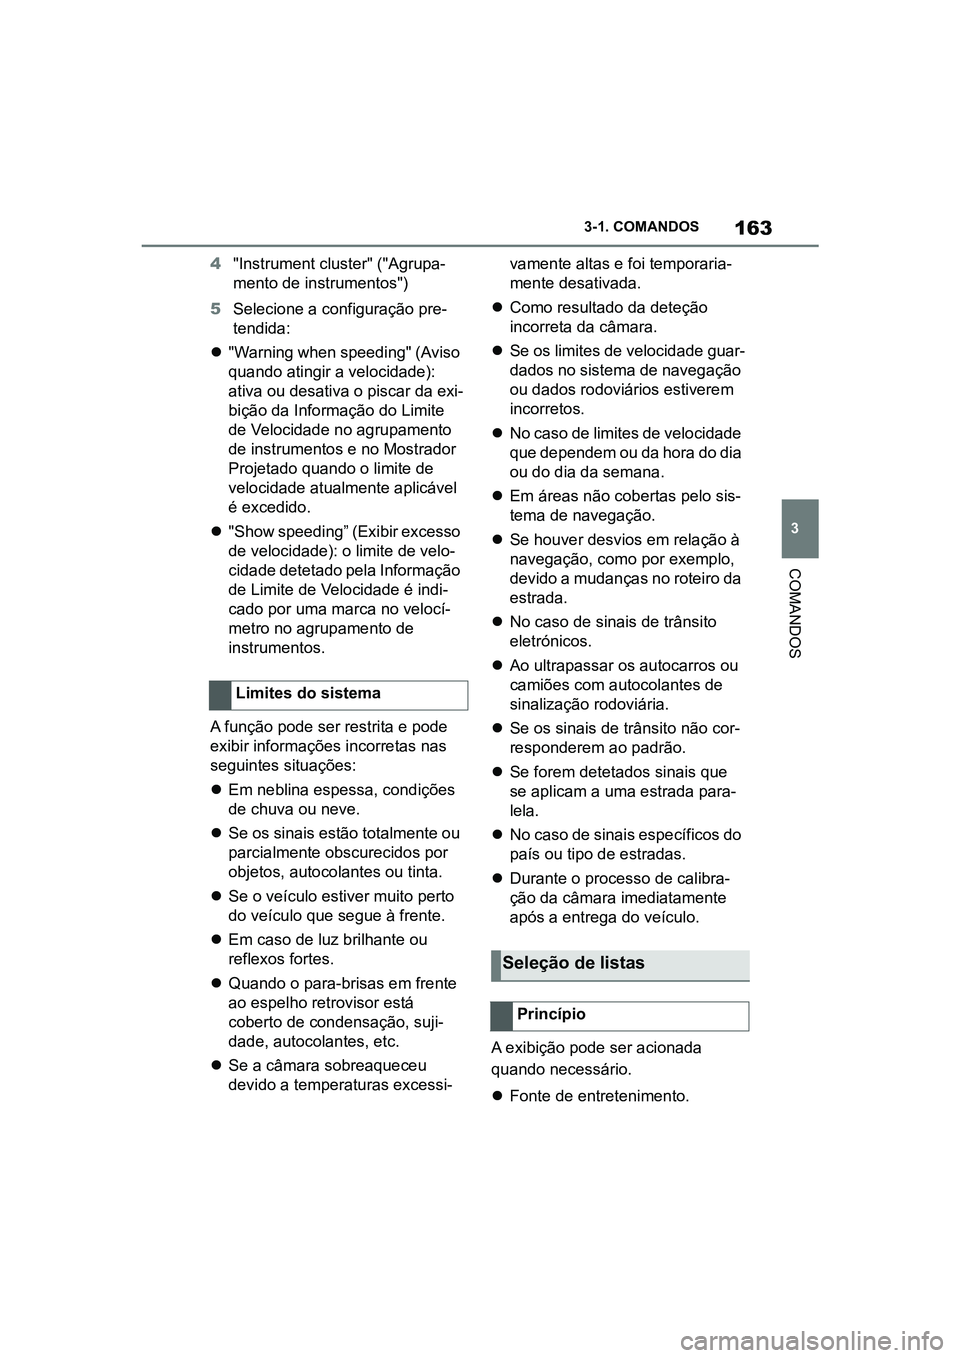 TOYOTA SUPRA 2019  Manual de utilização (in Portuguese) 163
3
Supra Owner's Manual 3-1. COMANDOS
COMANDOS
4
"Instrument cluster" ("Agrupa -
mento de instrumentos")
5 Selecione a configuração pre -
t
 endida:
 "Warning when spee